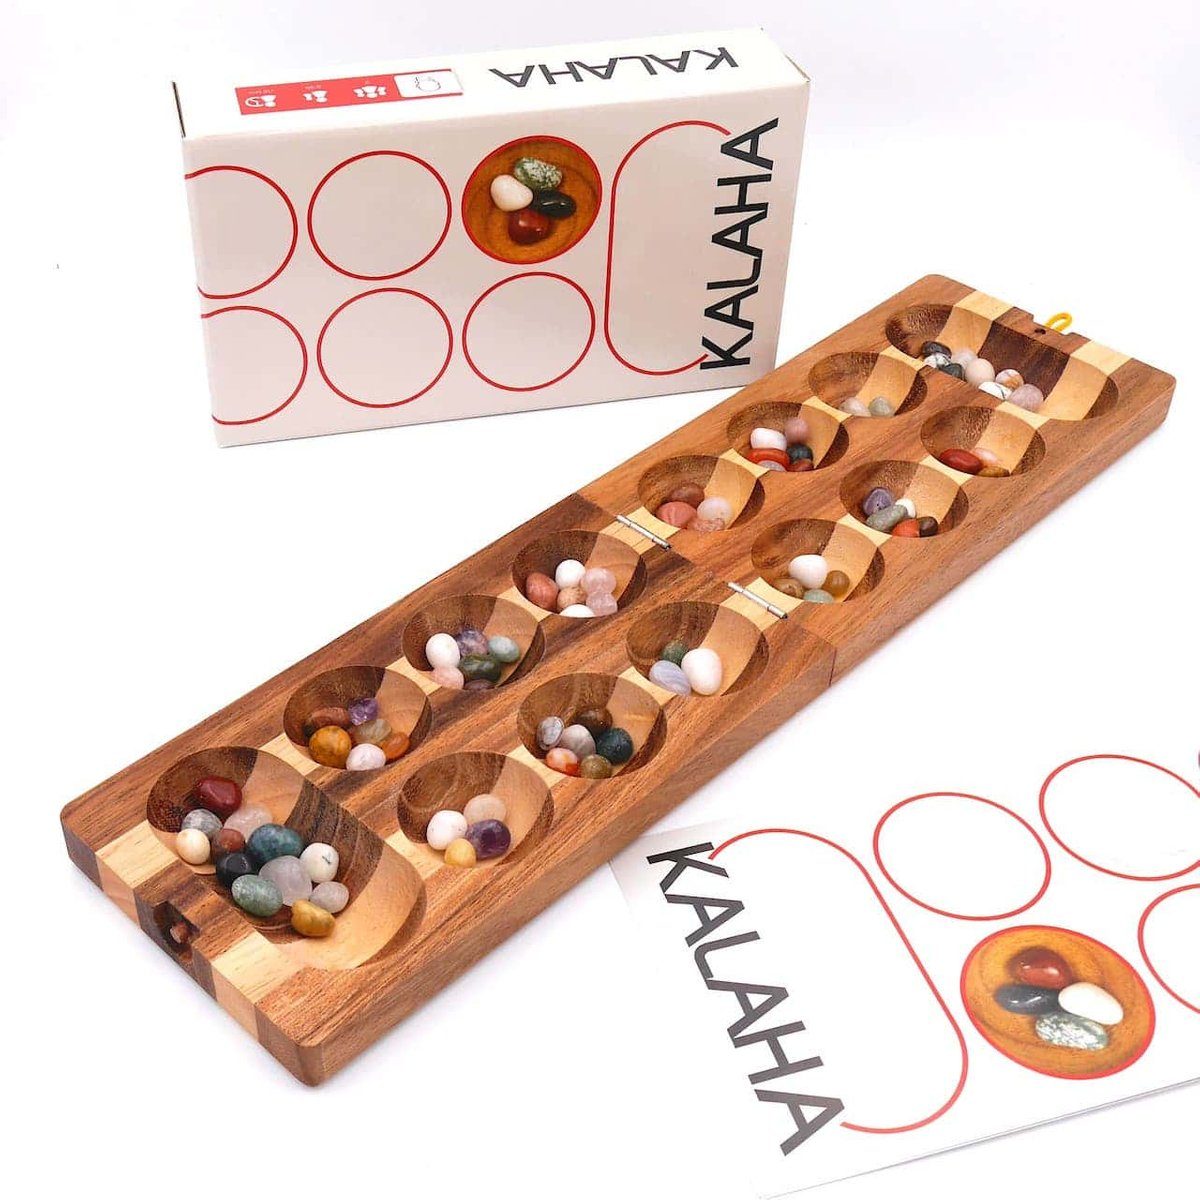 ROMBOL Denkspiele zweifarbig, inkl. Kalaha - Brettspiel Steinchenspiel Spiel, hochwertiges Halbedelsteine Holzspiel Halbedelsteinen